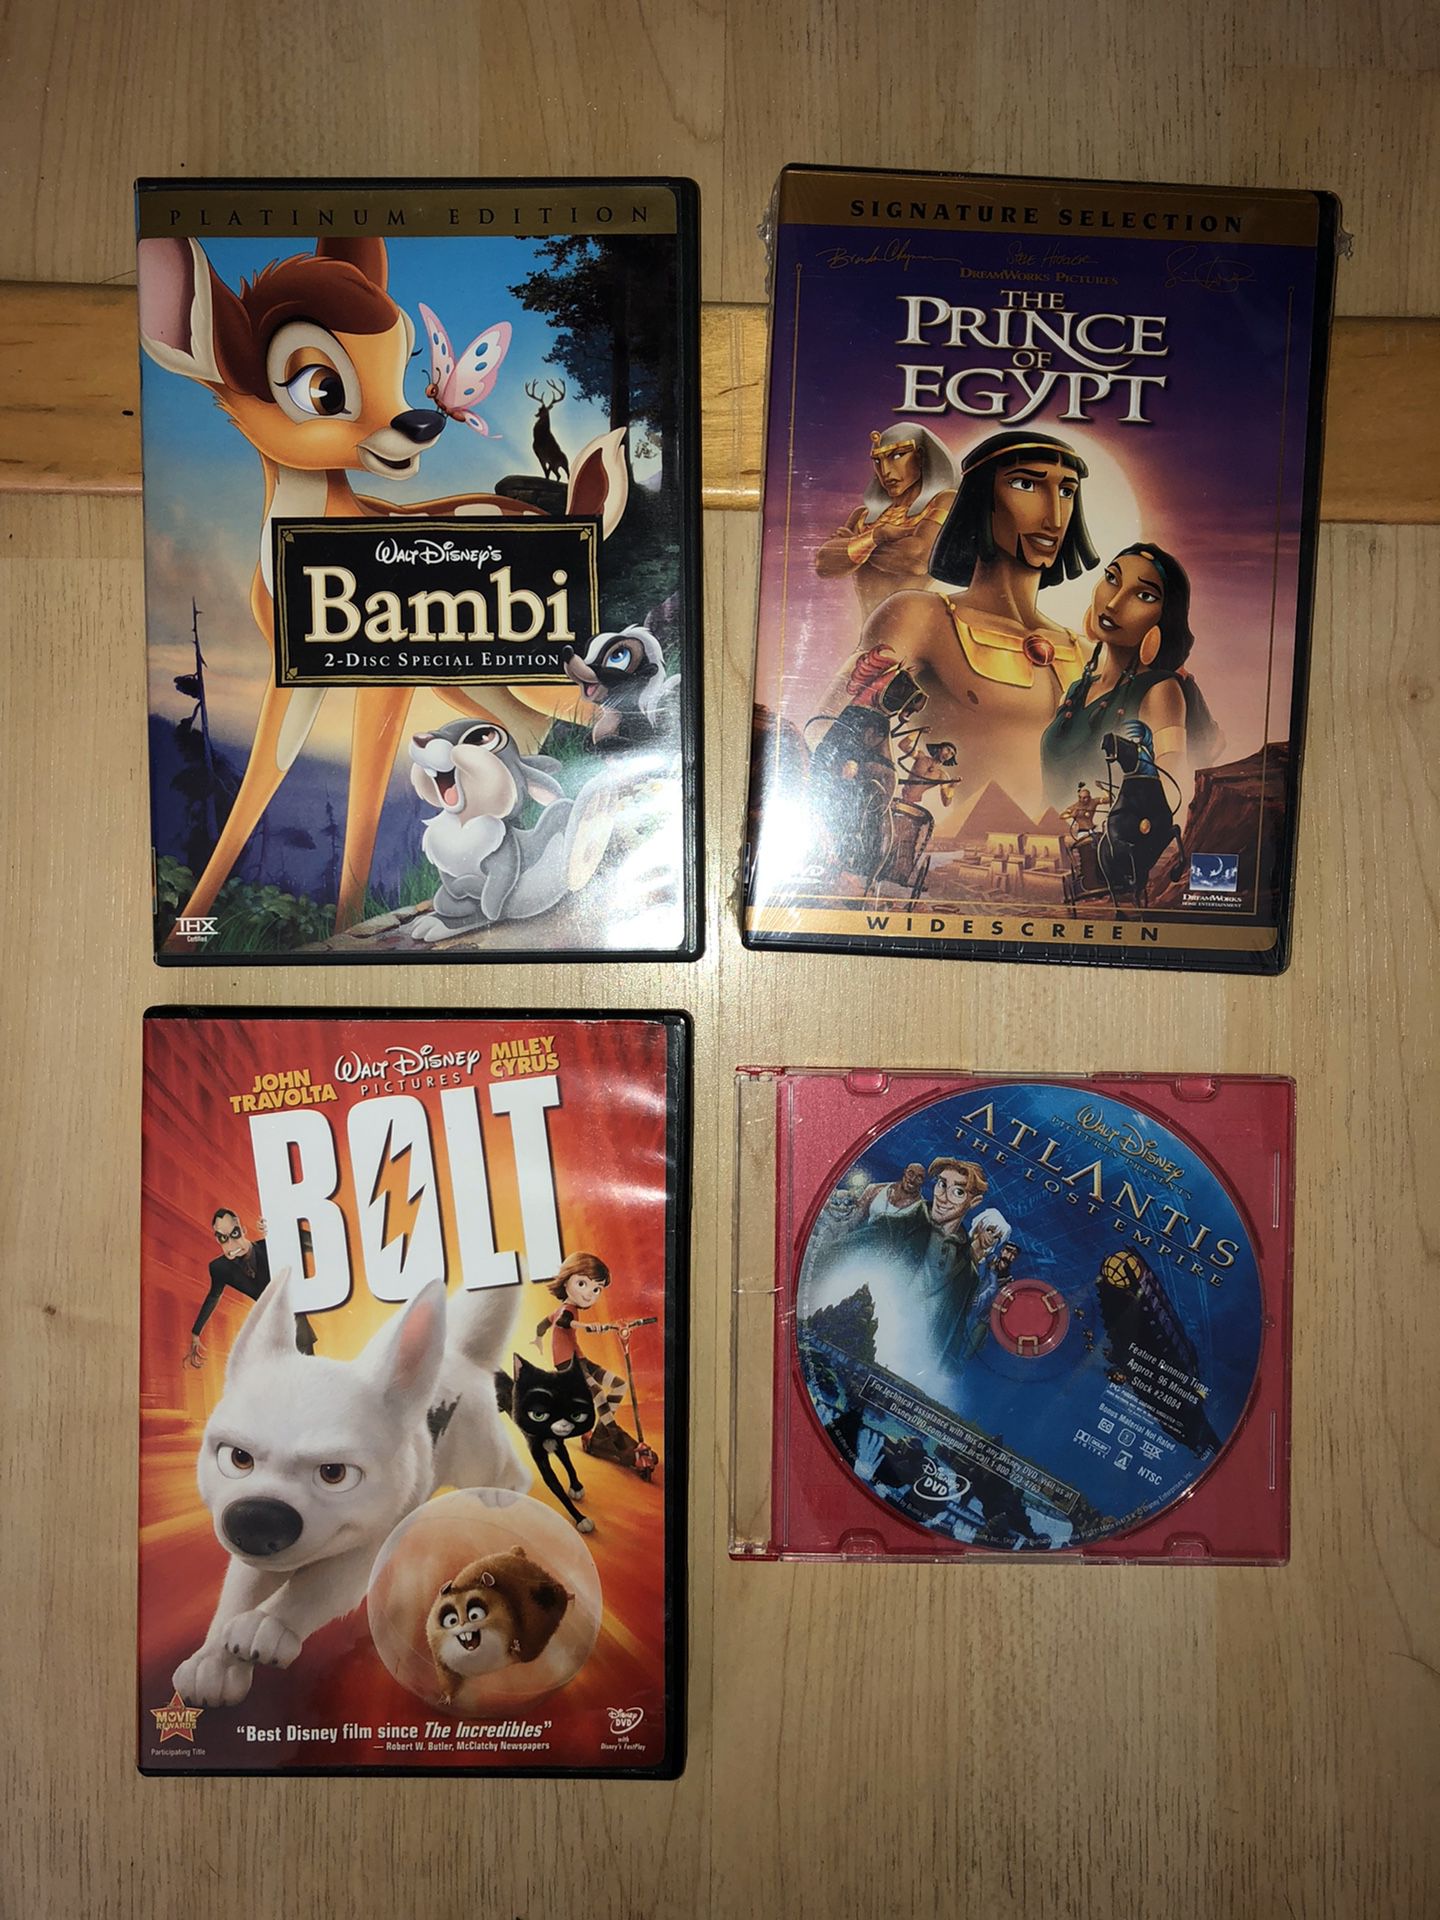 Four Disney movie dvds - Bambi, bolt, Atlantis